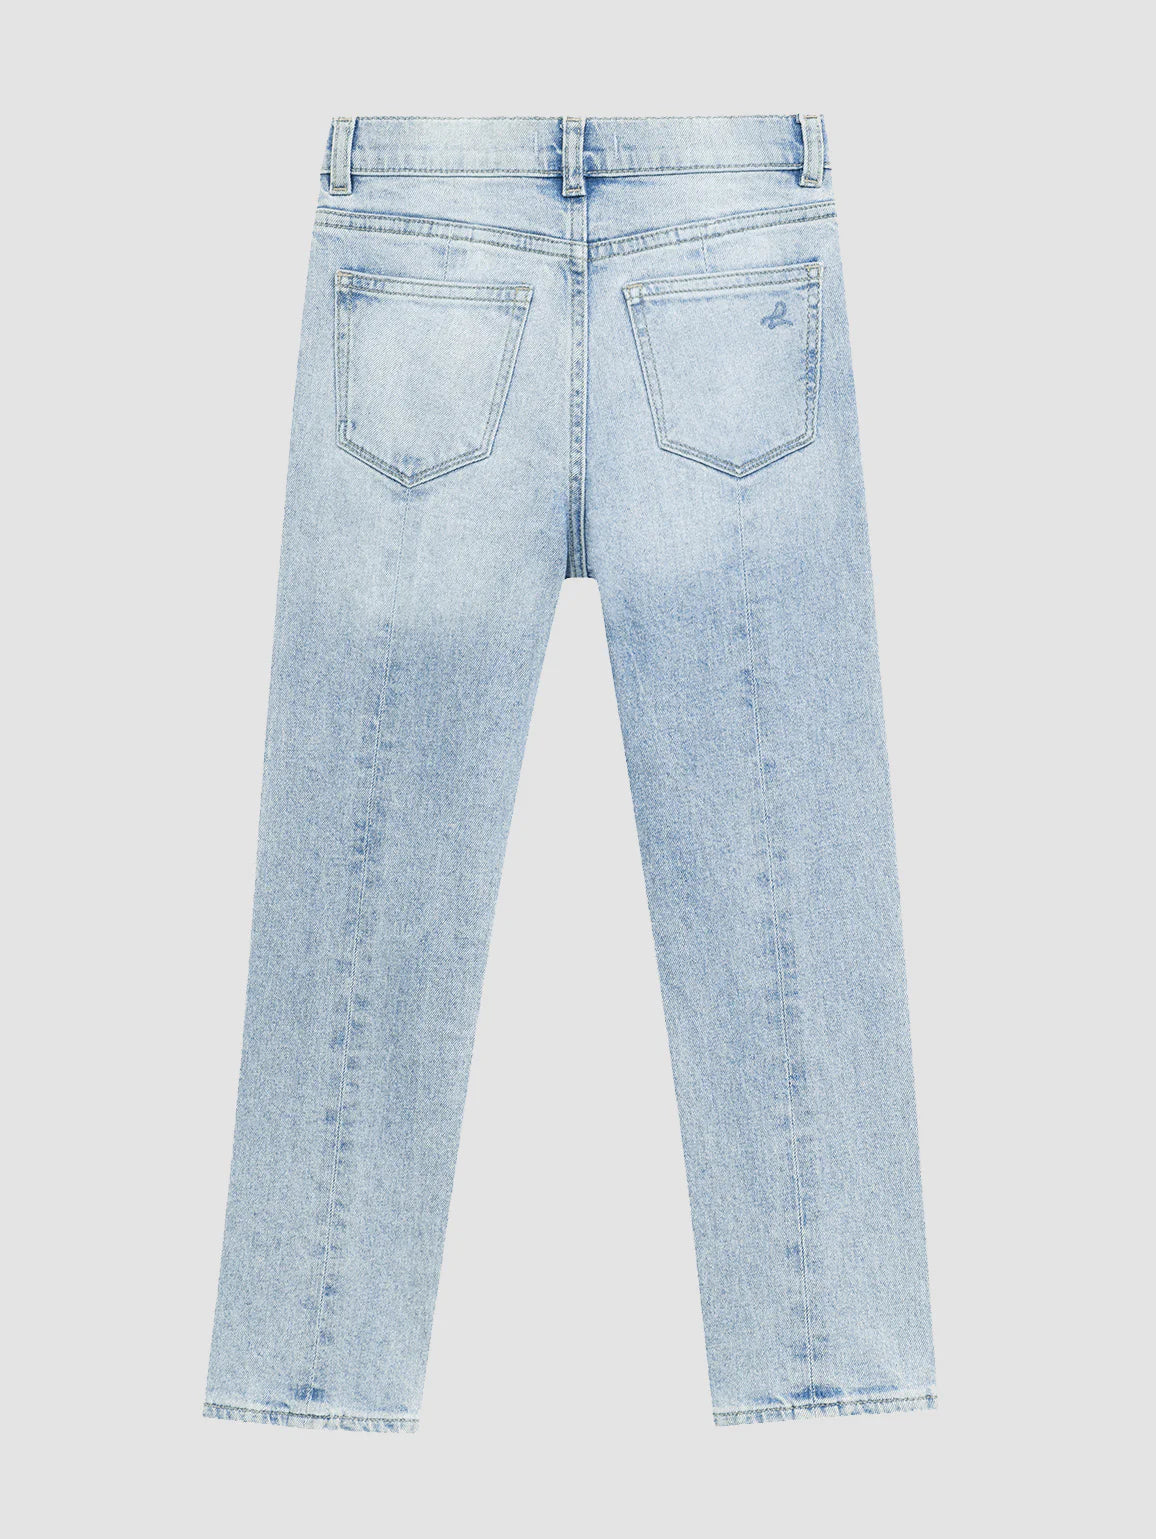 Emie Straight Jeans W/ Slit